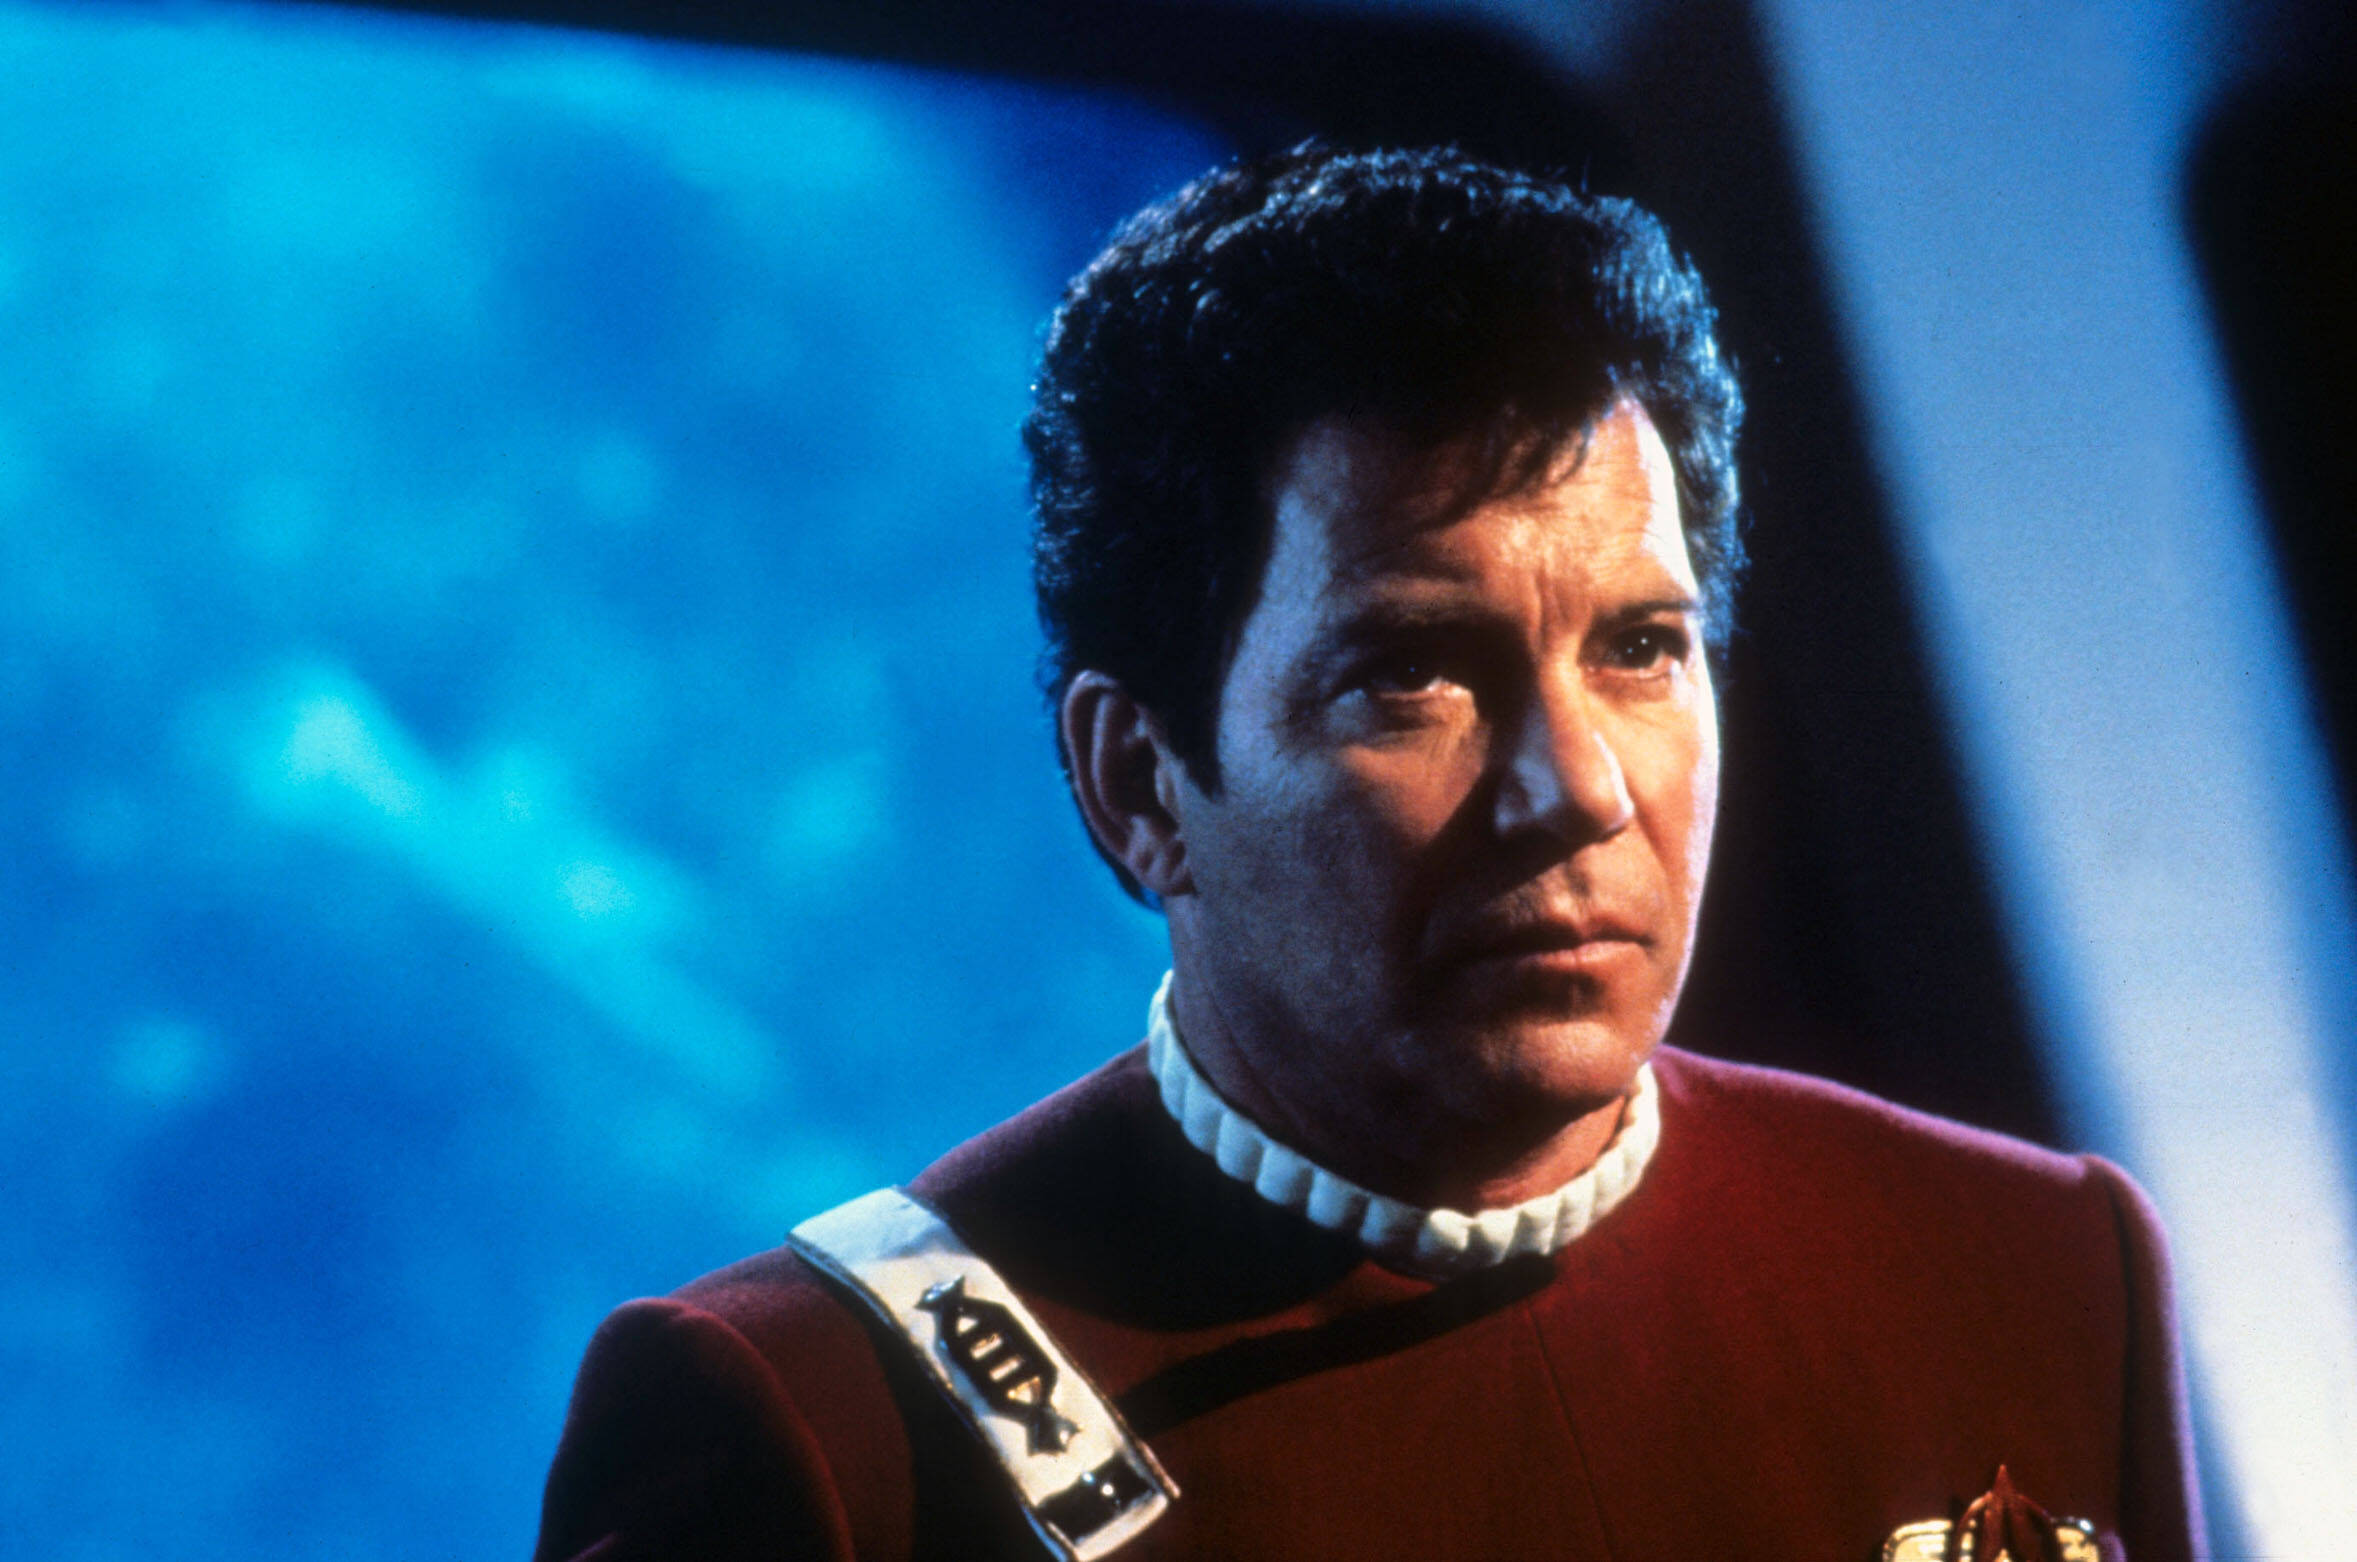 Leader carismatico e audace, lo spirito avventuroso e il coraggio morale di Kirk hanno lasciato un segno indelebile nel fandom di <i>Star Trek</i>. La sua capacità di gestire situazioni complesse con fascino e arguzia lo ha fatto apprezzare da generazioni di spettatori.